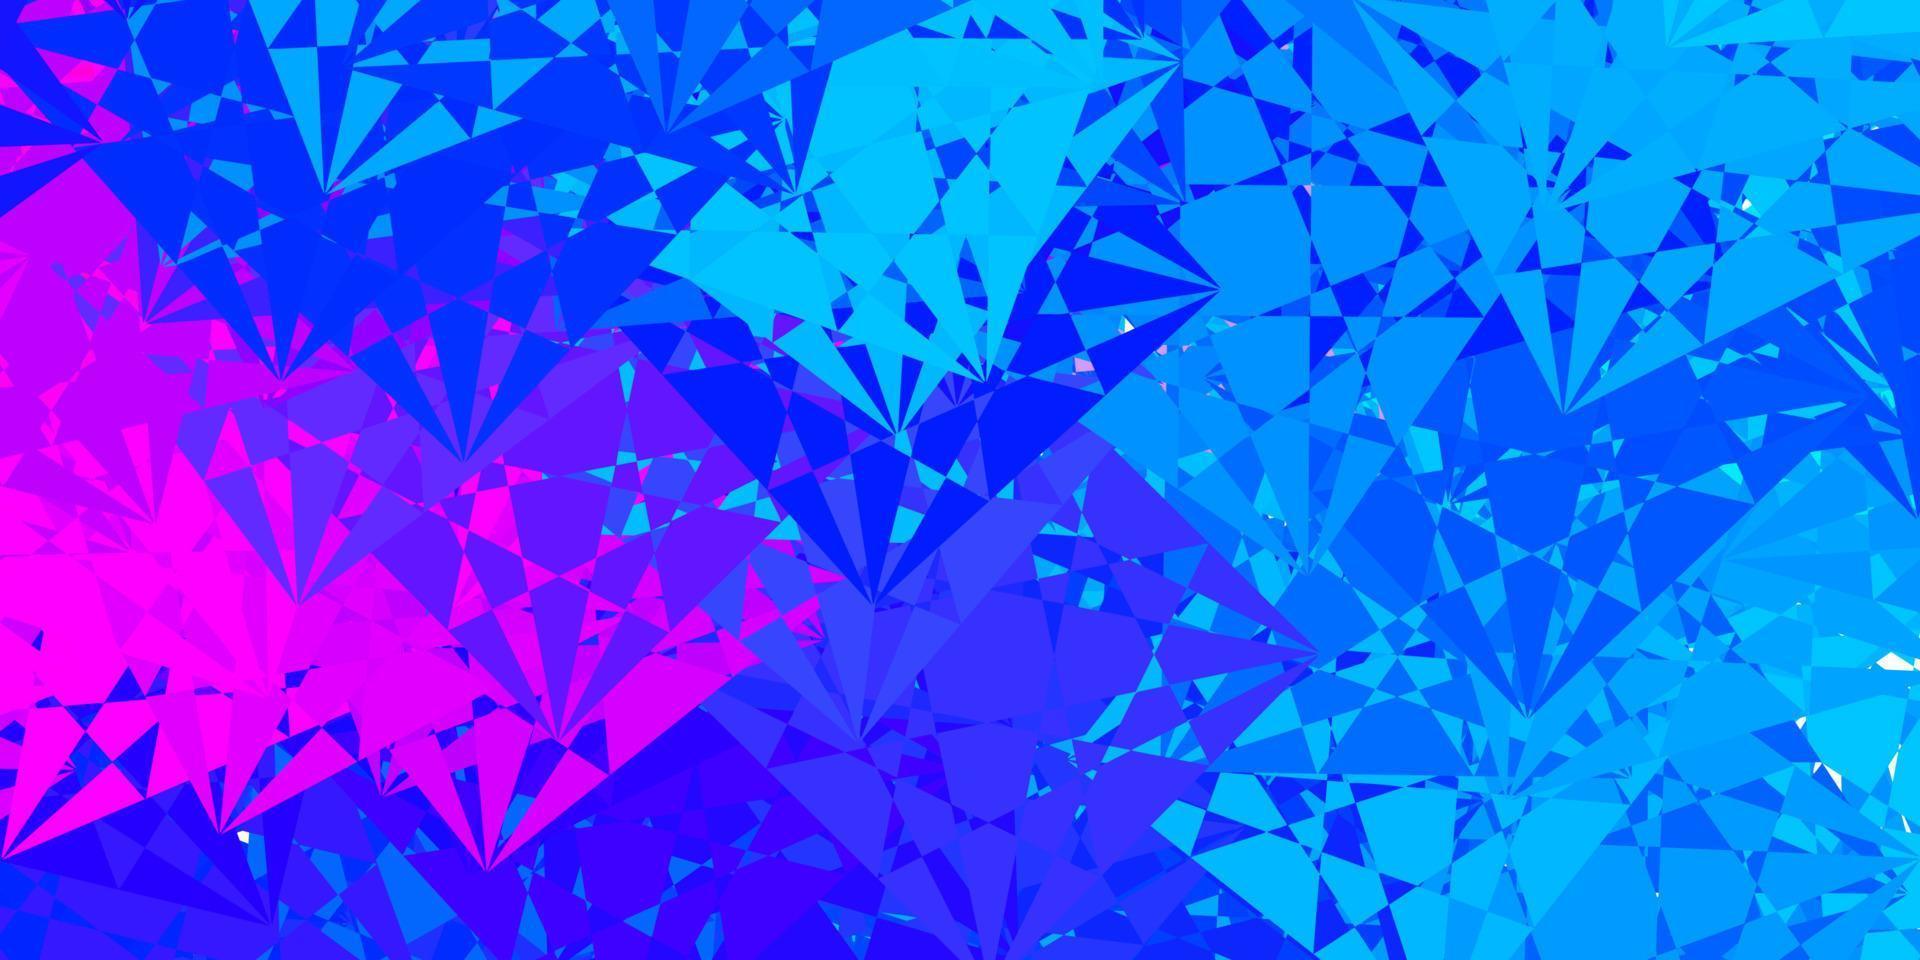 ljusrosa, blå vektorstruktur med slumpmässiga trianglar. vektor